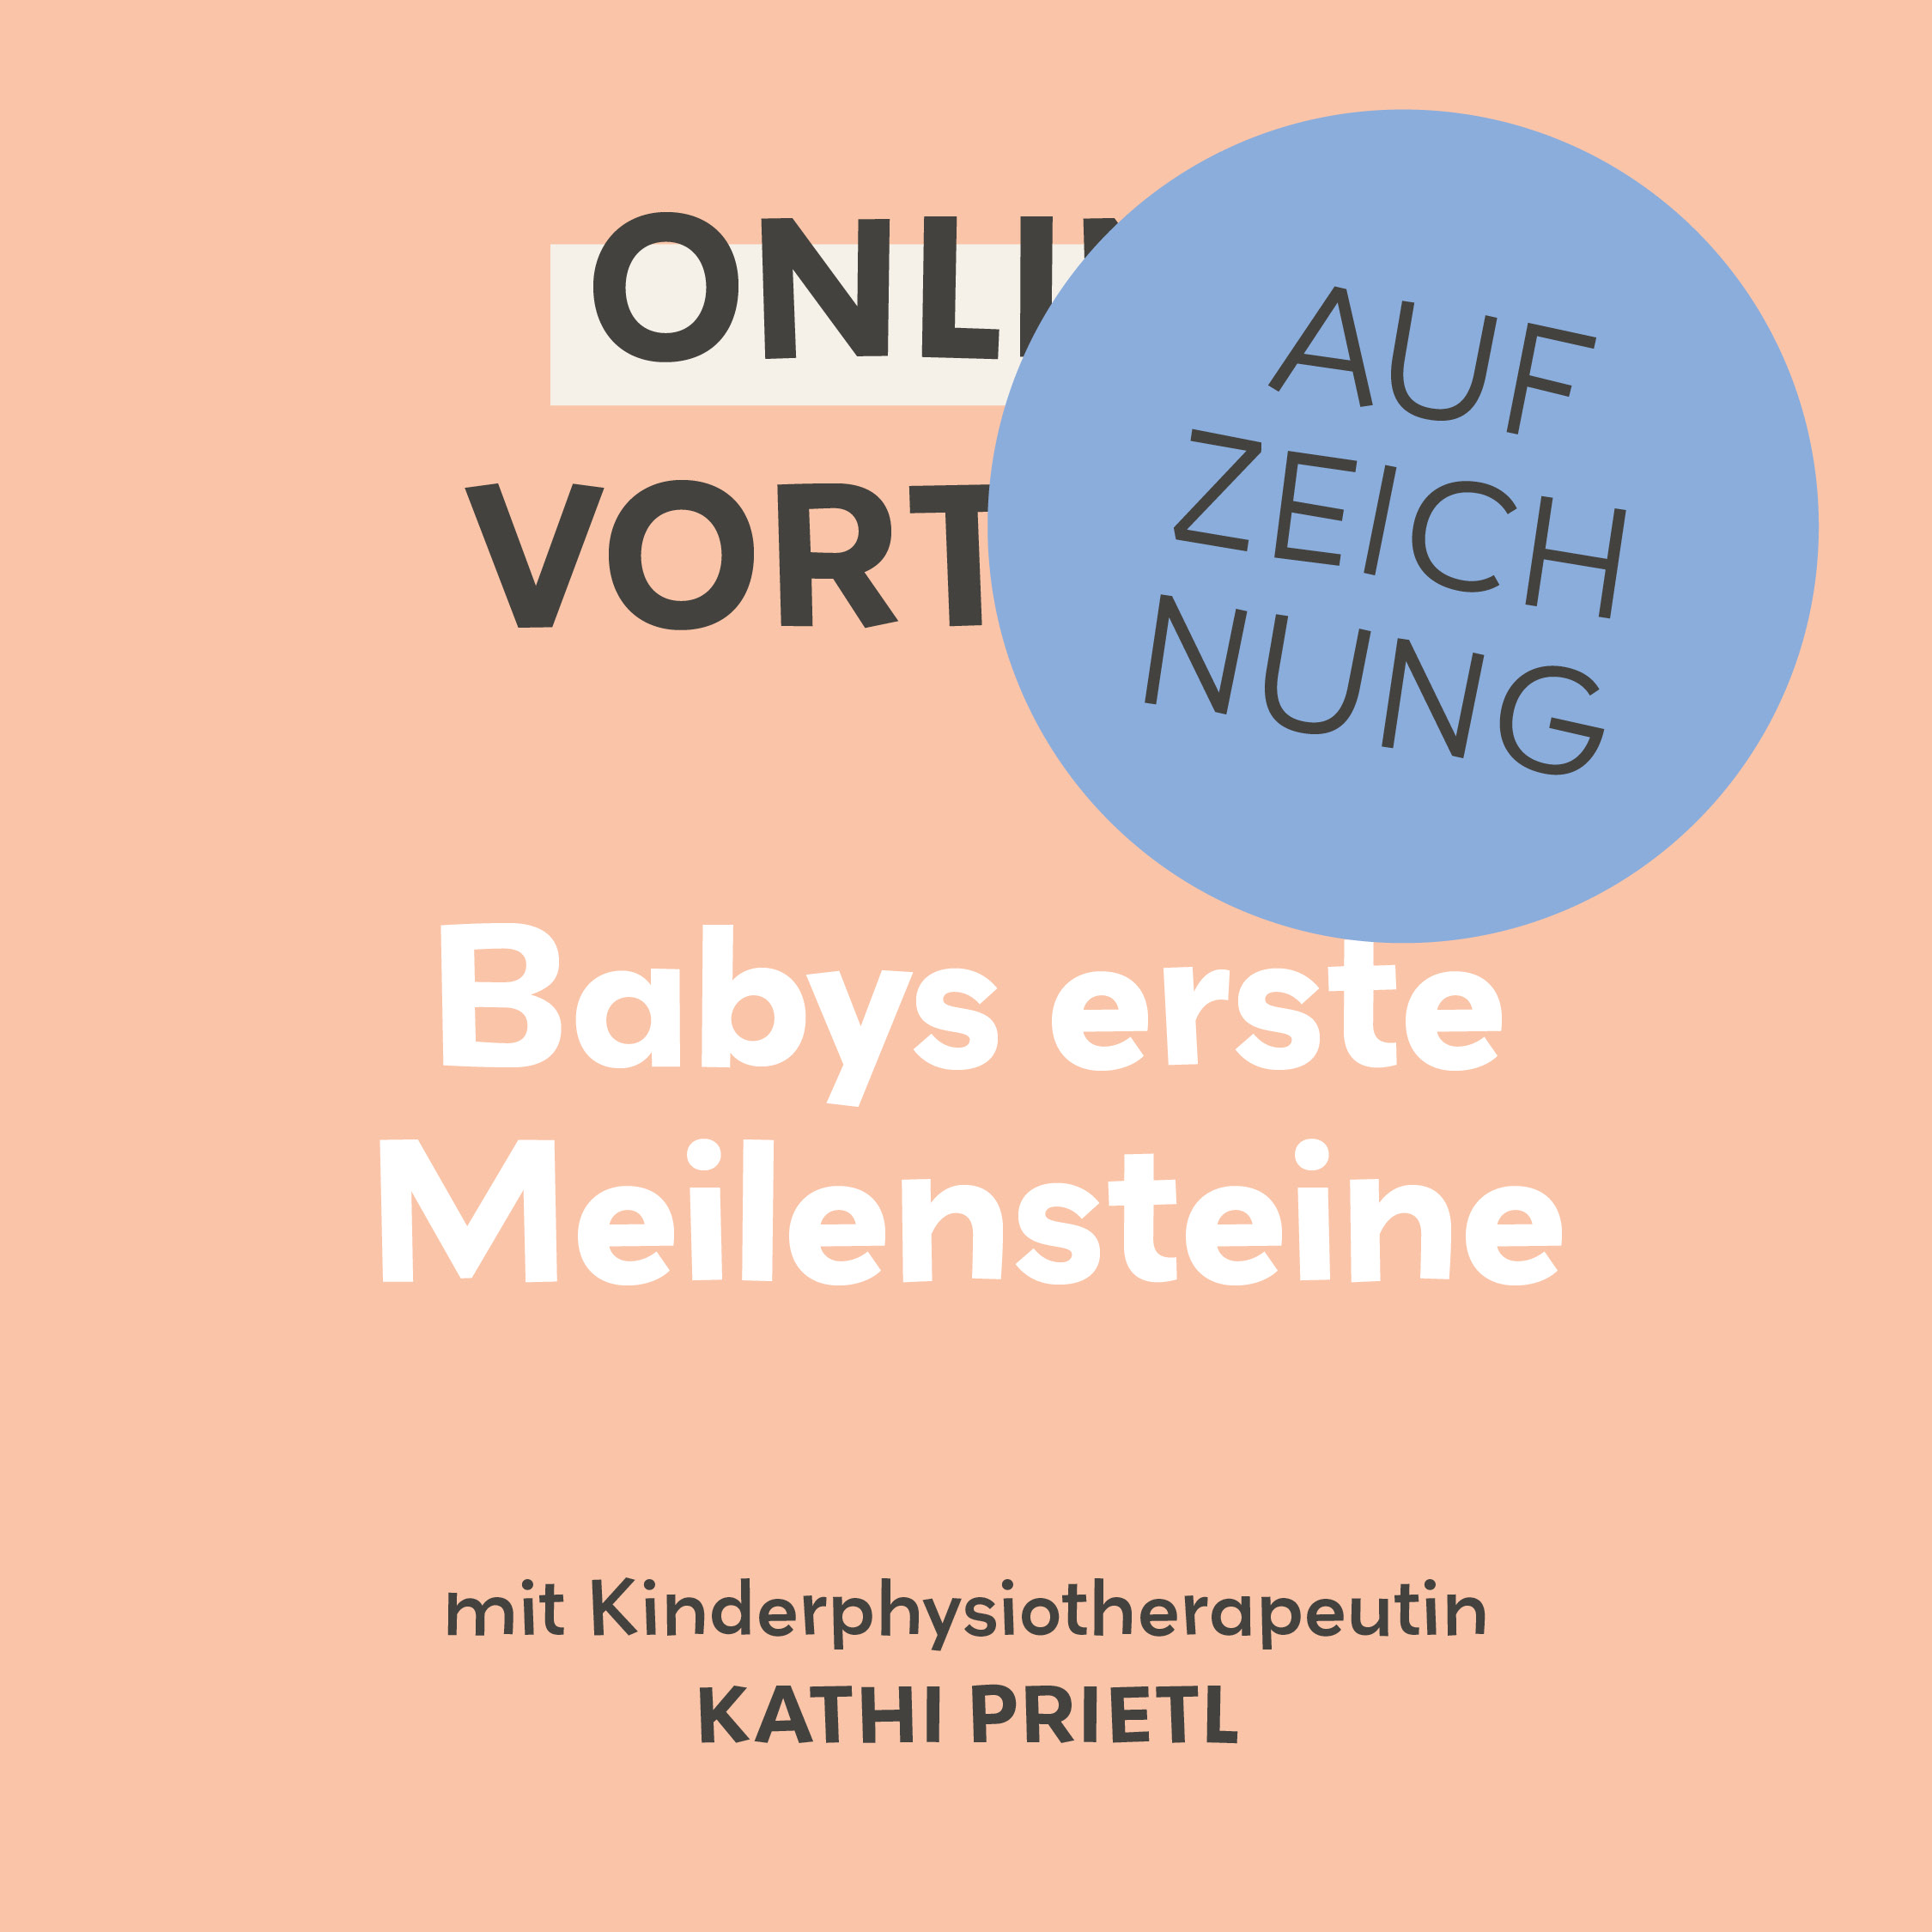 Aufzeichnung Online-Vortrag Babys erste Meilensteine